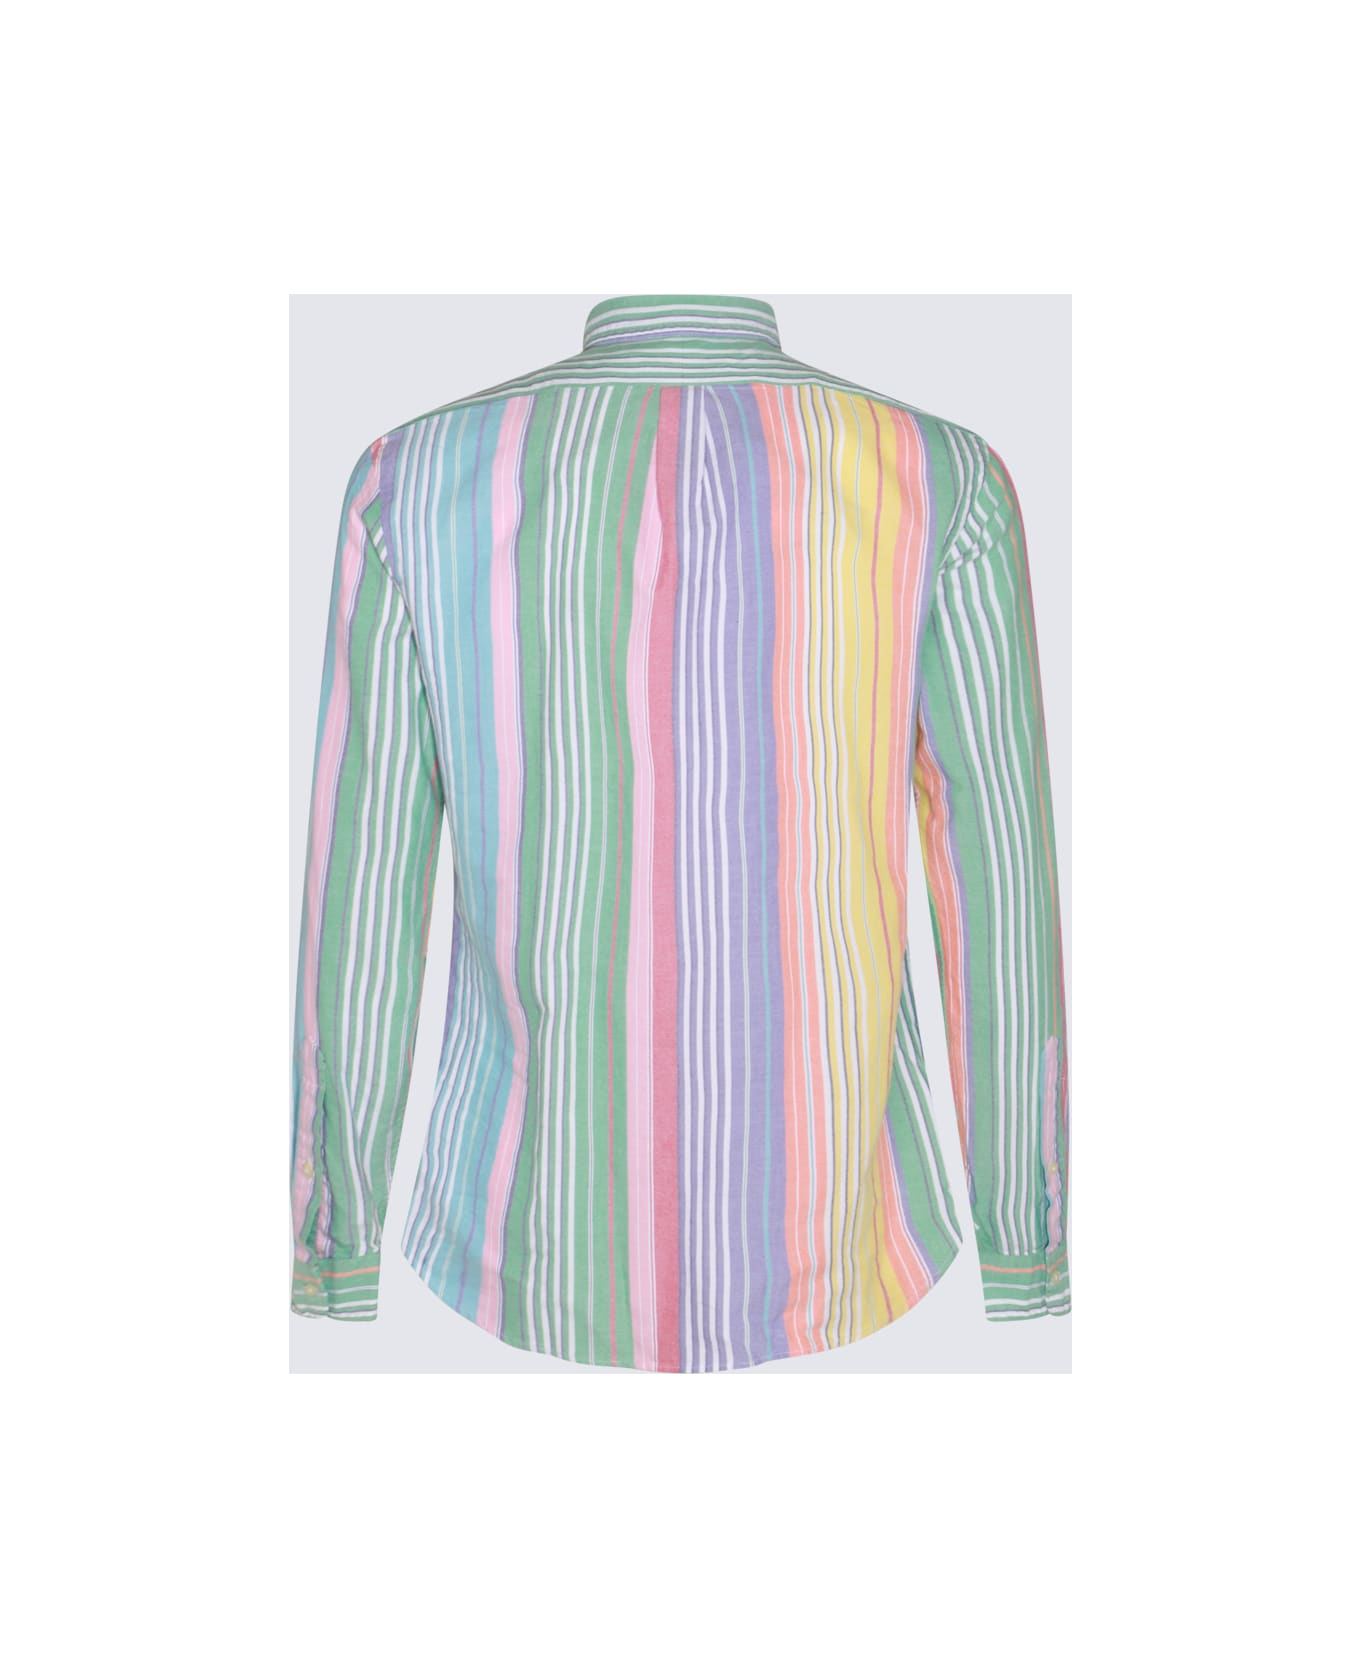 Polo Ralph Lauren Multicolor Cotton Shirt - 6346A GREEN/YELLOW MULTI